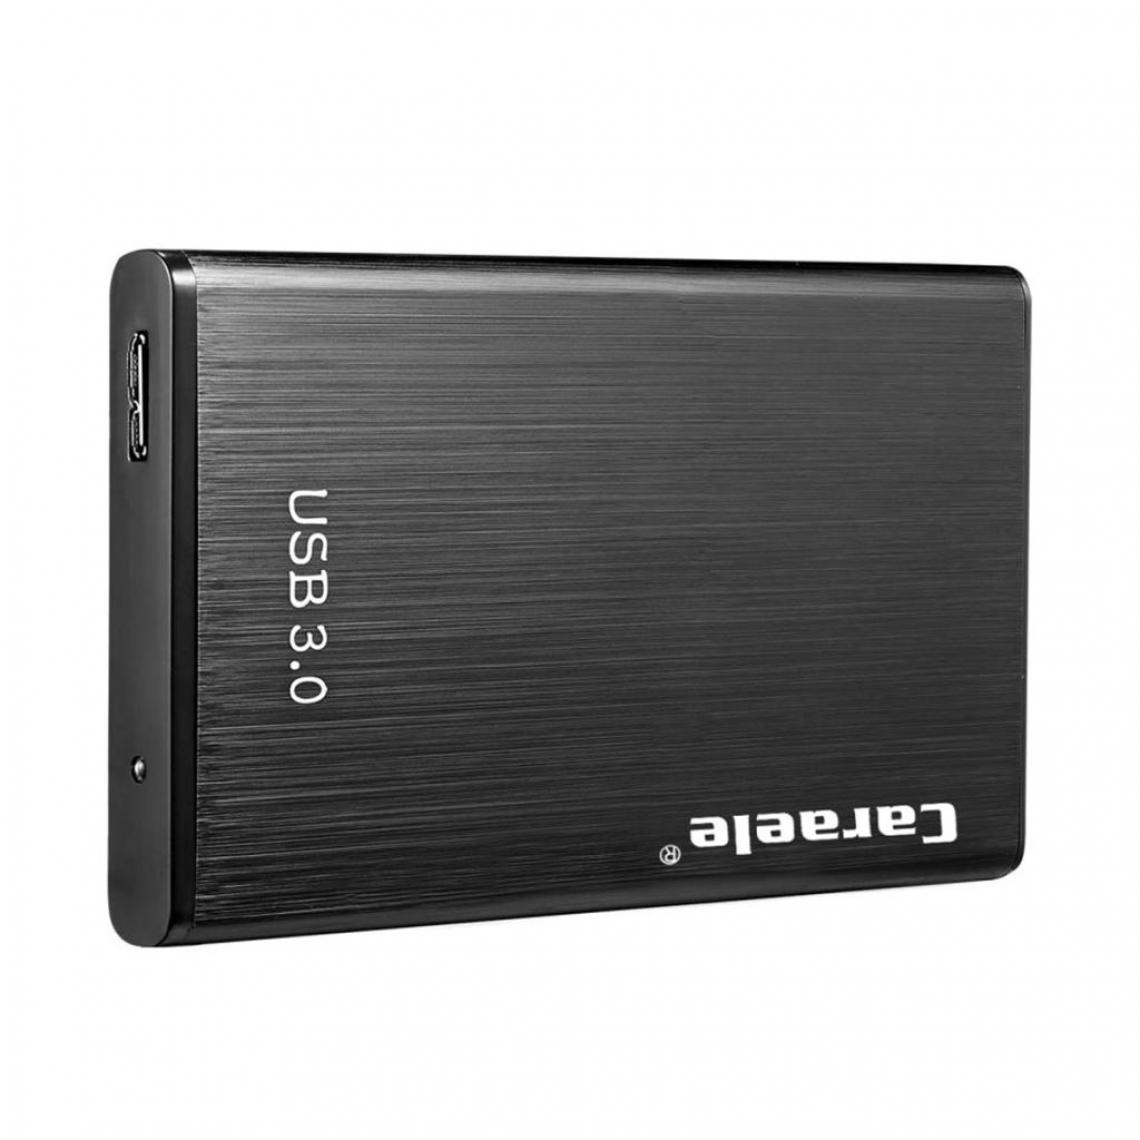 marque generique - Disque Dur Mobile USB 3.0 Haute Vitesse USB 3.0 Vers SATA III 1 To - Boitier PC